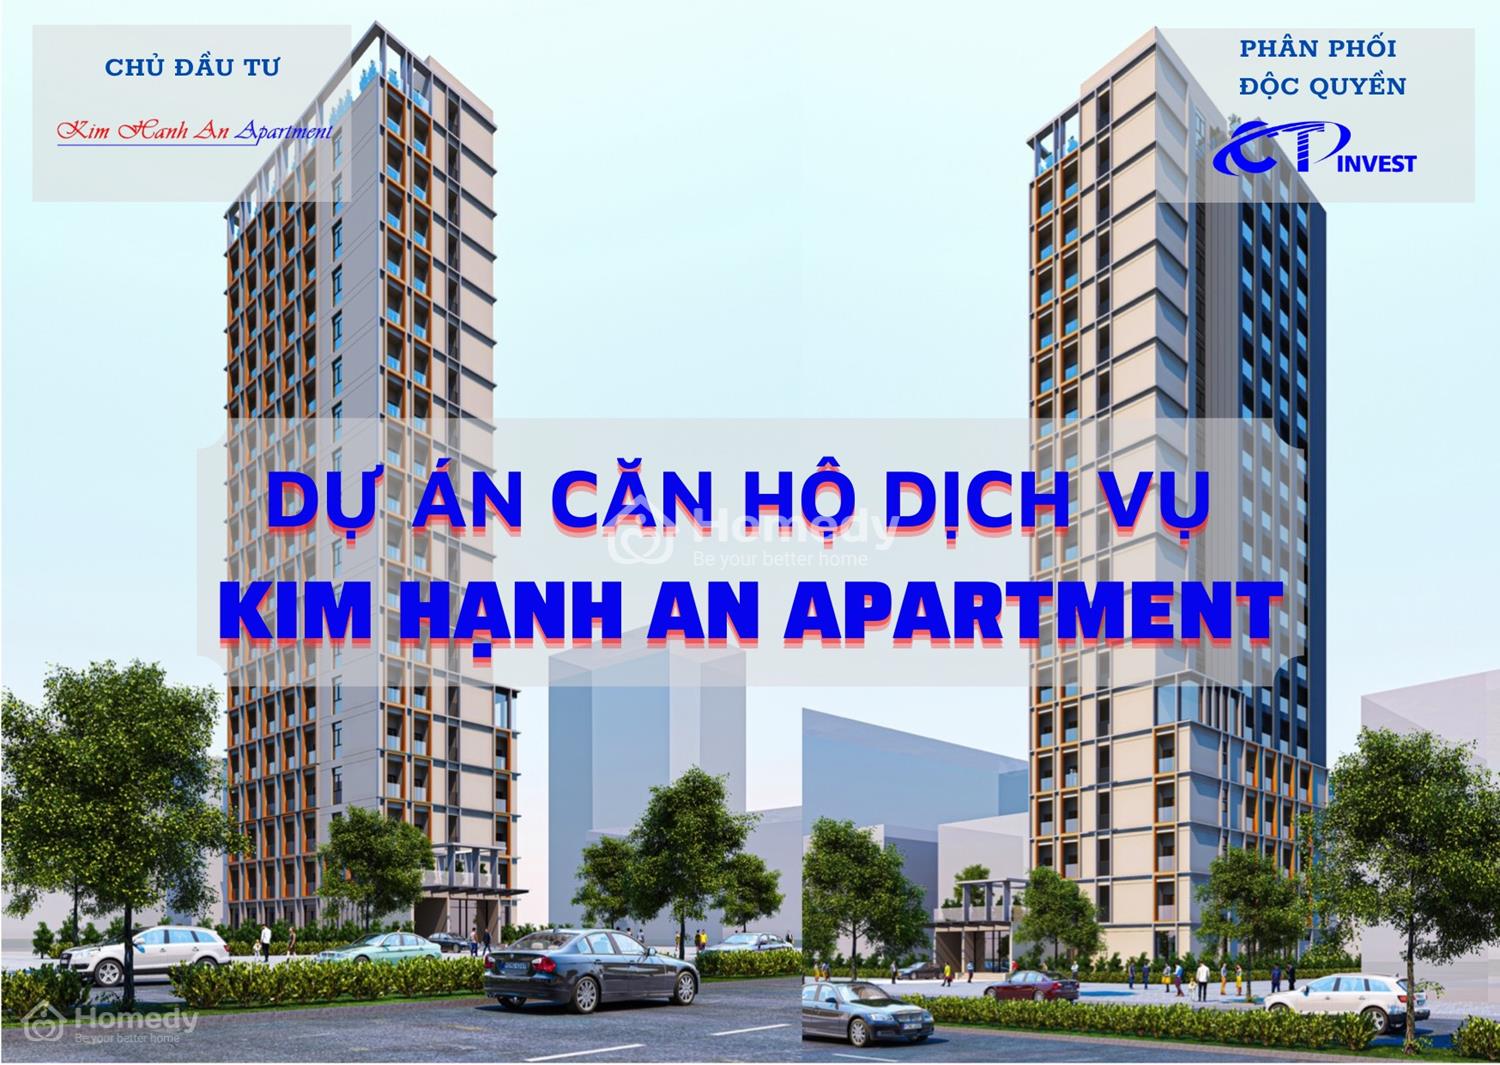 Ảnh giới thiệu dự án Kim Hạnh An Apartment